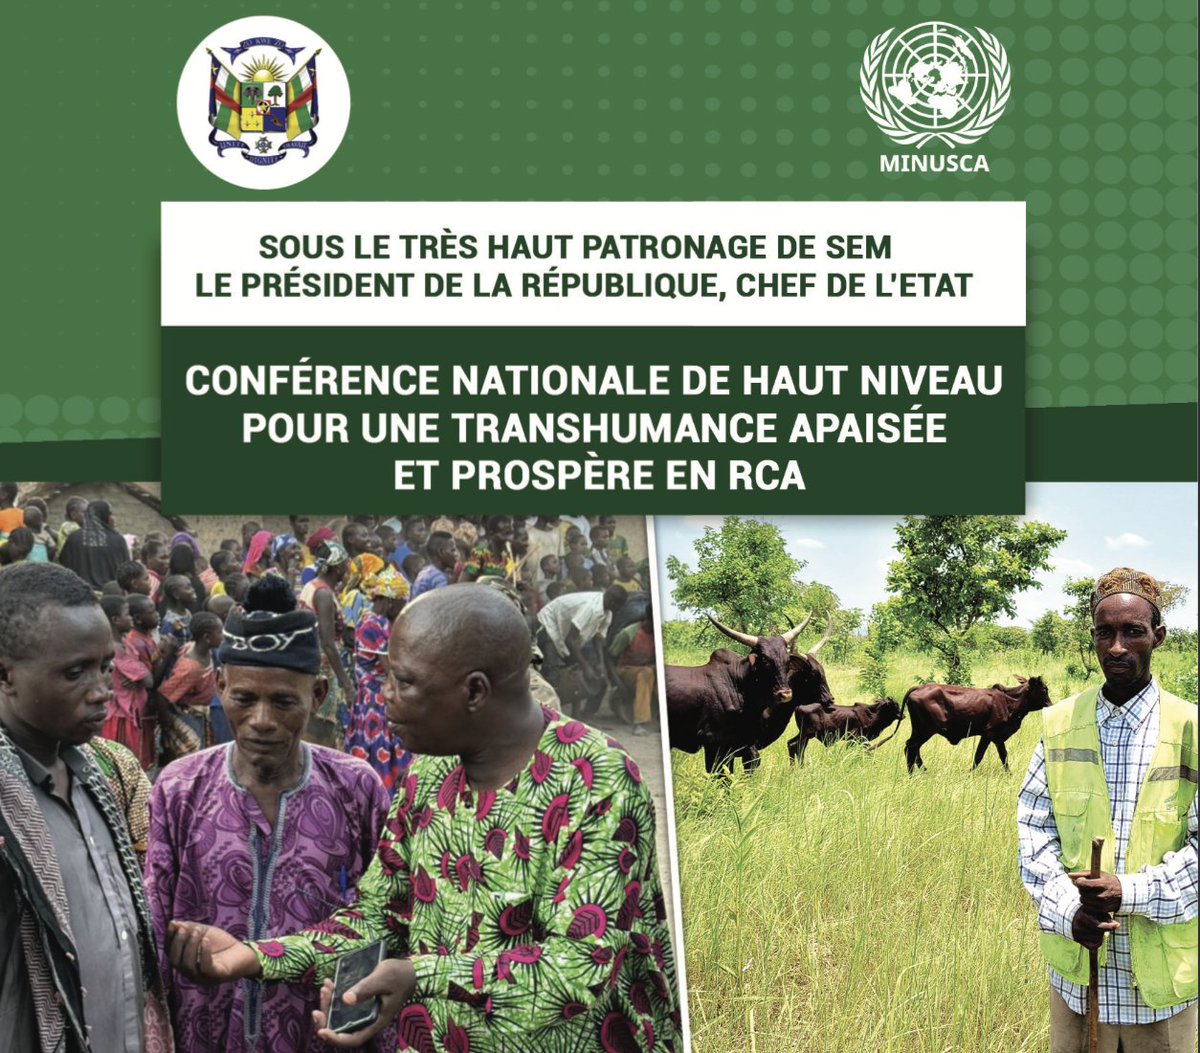 #ConfPresse Bangui abrite le 13/5 une «conférence nationale de haut niveau pour une transhumance apaisée & prospère en RCA», organisée par le @GouvCF en partenariat avec la #MINUSCA. Le but: faire de l’élevage et la transhumance des facteurs de paix, stabilisation & développement